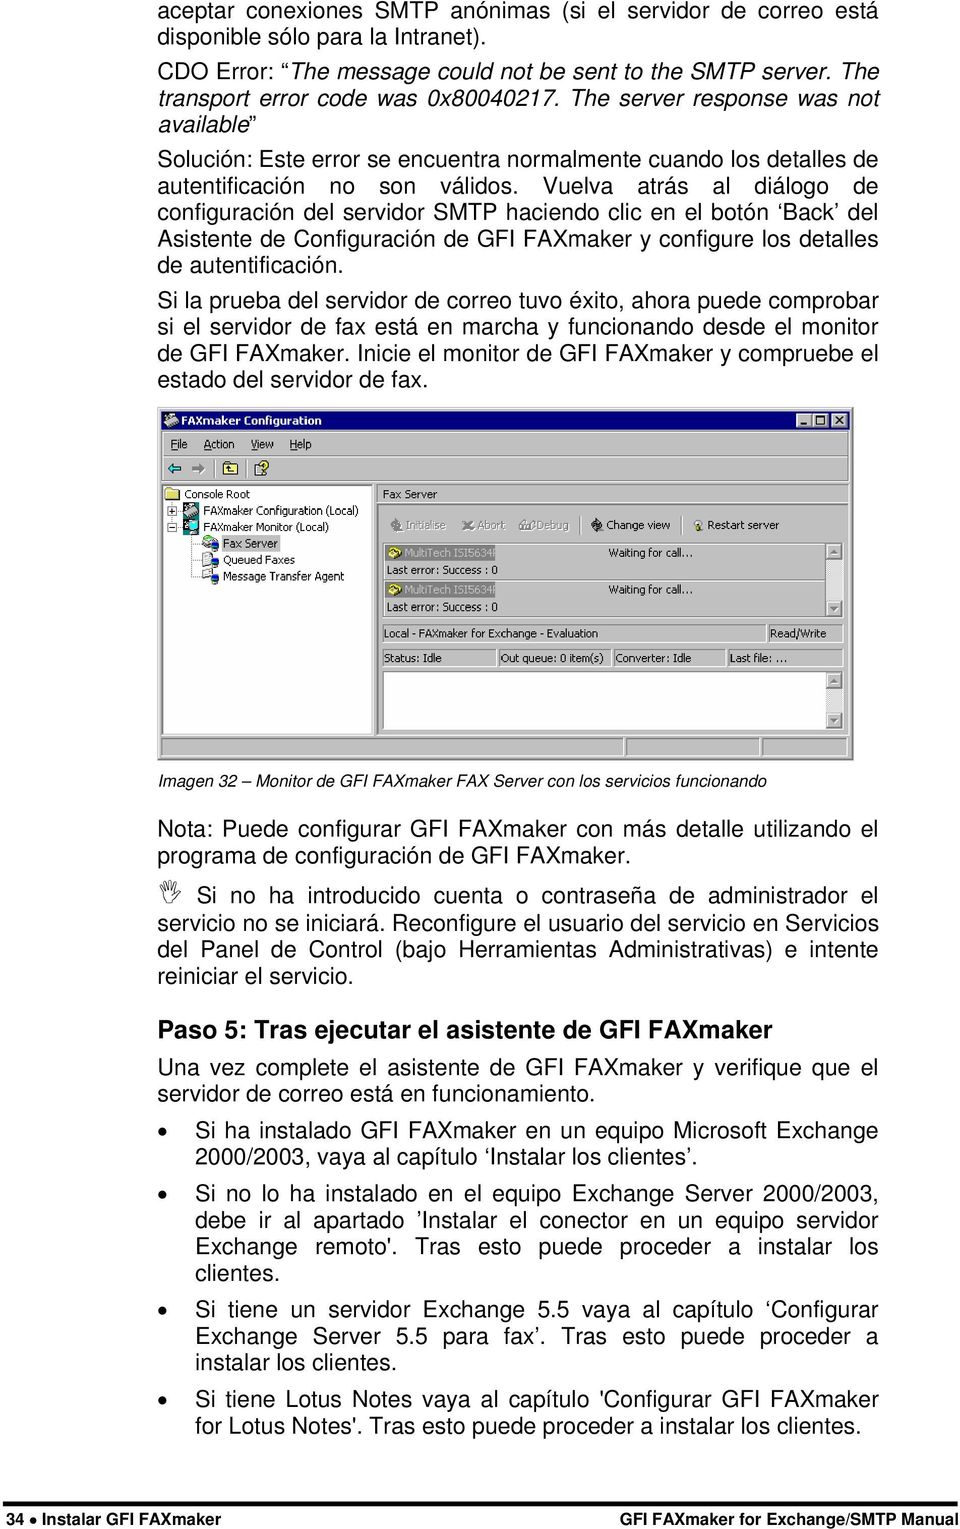 Vuelva atrás al diálogo de configuración del servidor SMTP haciendo clic en el botón Back del Asistente de Configuración de GFI FAXmaker y configure los detalles de autentificación.